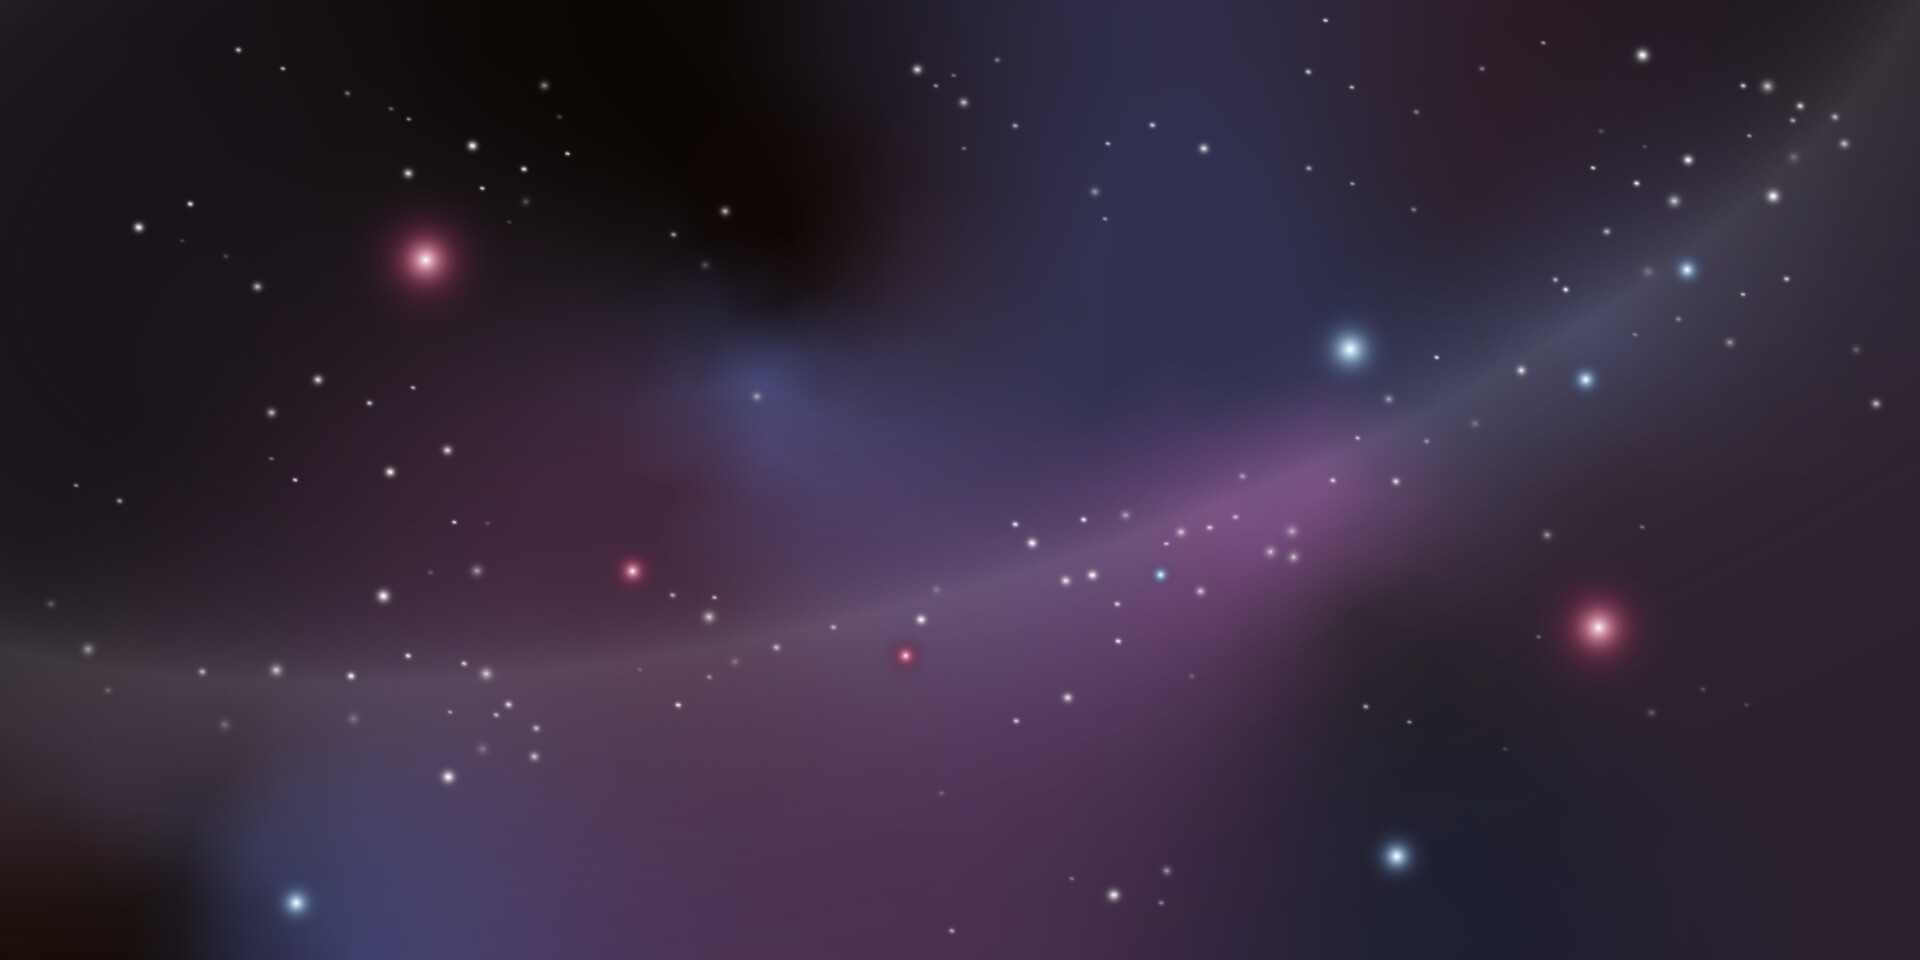 Với nền tảng độc đáo từ những hình ảnh thiên hà, bạn sẽ không thể rời mắt khỏi bức tranh nền tuyệt đẹp. Hãy cùng chiêm ngưỡng khung cảnh thiên hà đẹp tuyệt vời này.